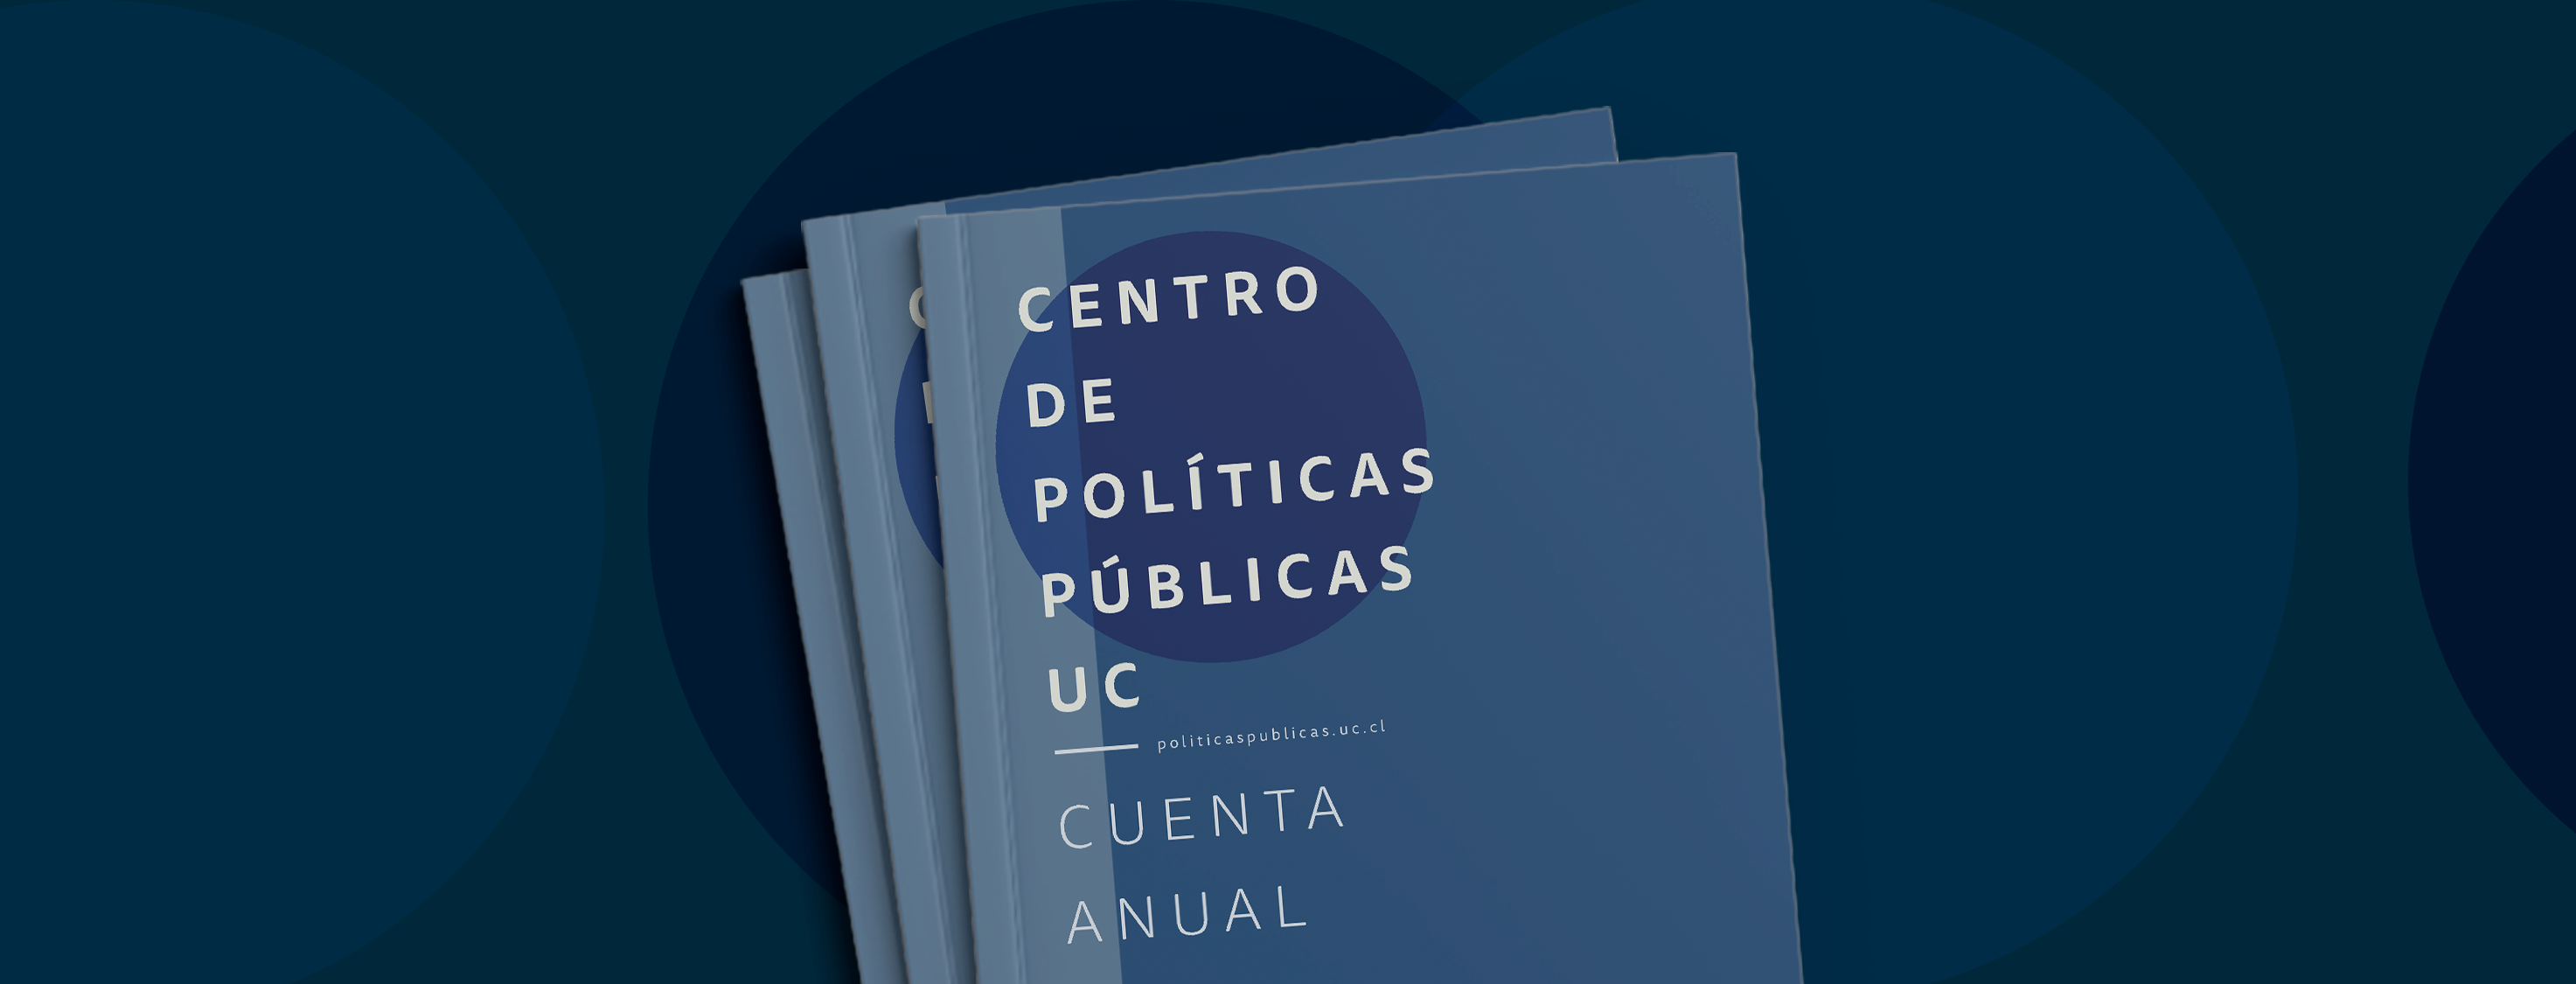 Imagen de Cuenta anual 2019 - Centro de Políticas Públicas UC